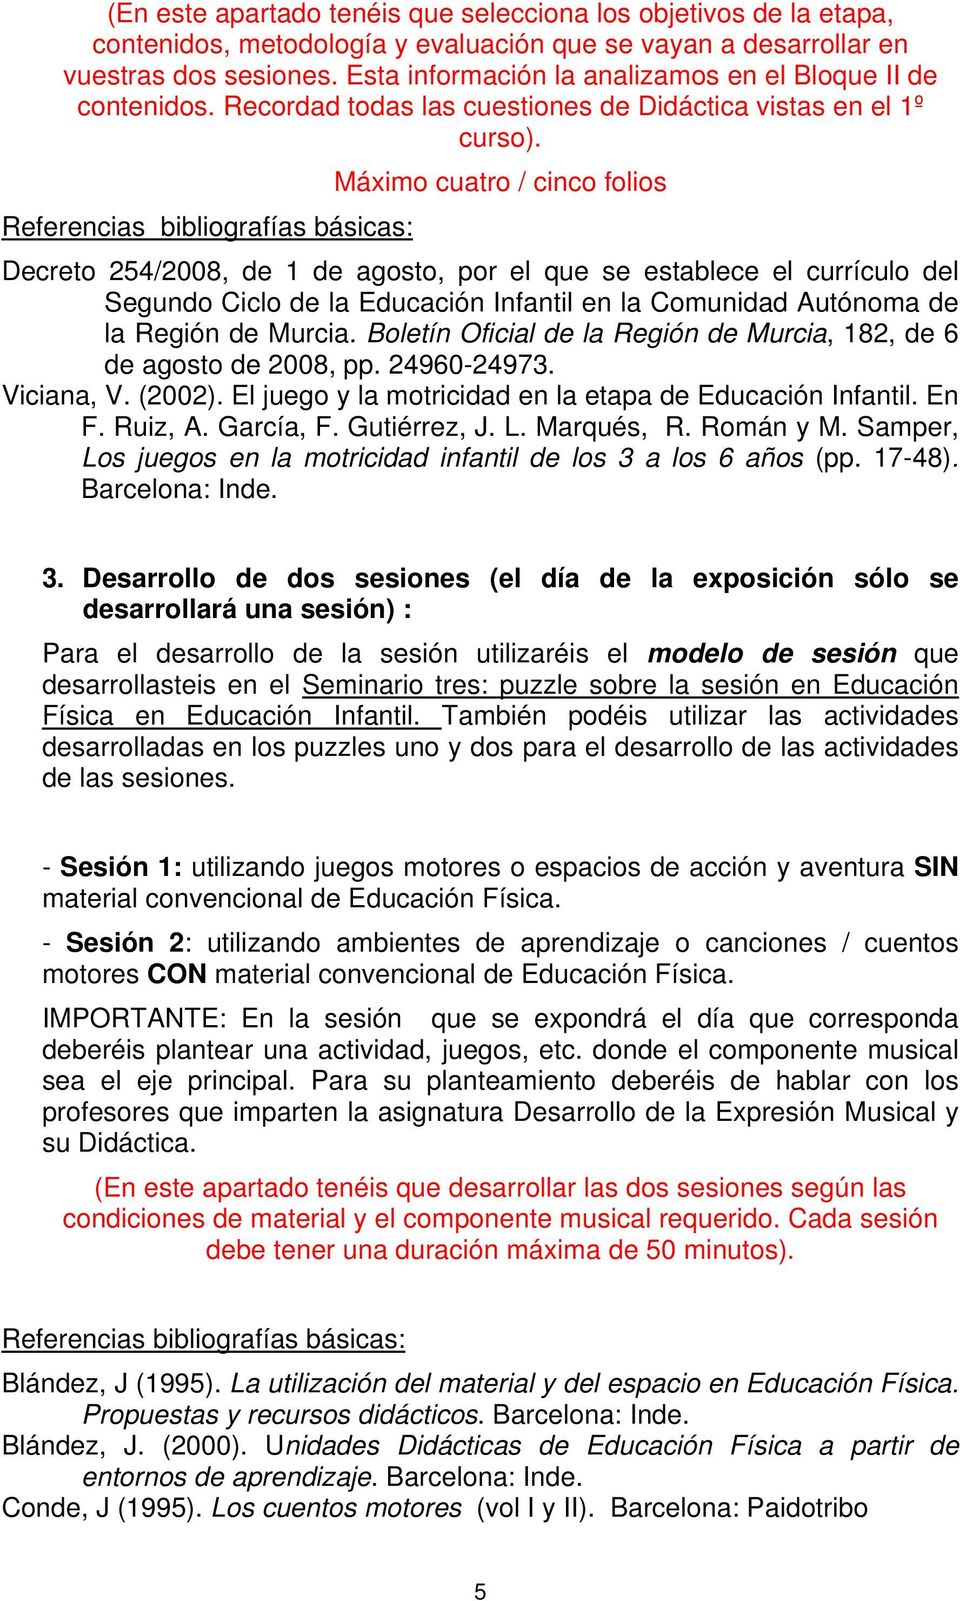 Máximo cuatro / cinco folios Decreto 254/2008, de 1 de agosto, por el que se establece el currículo del Segundo Ciclo de la Educación Infantil en la Comunidad Autónoma de la Región de Murcia.